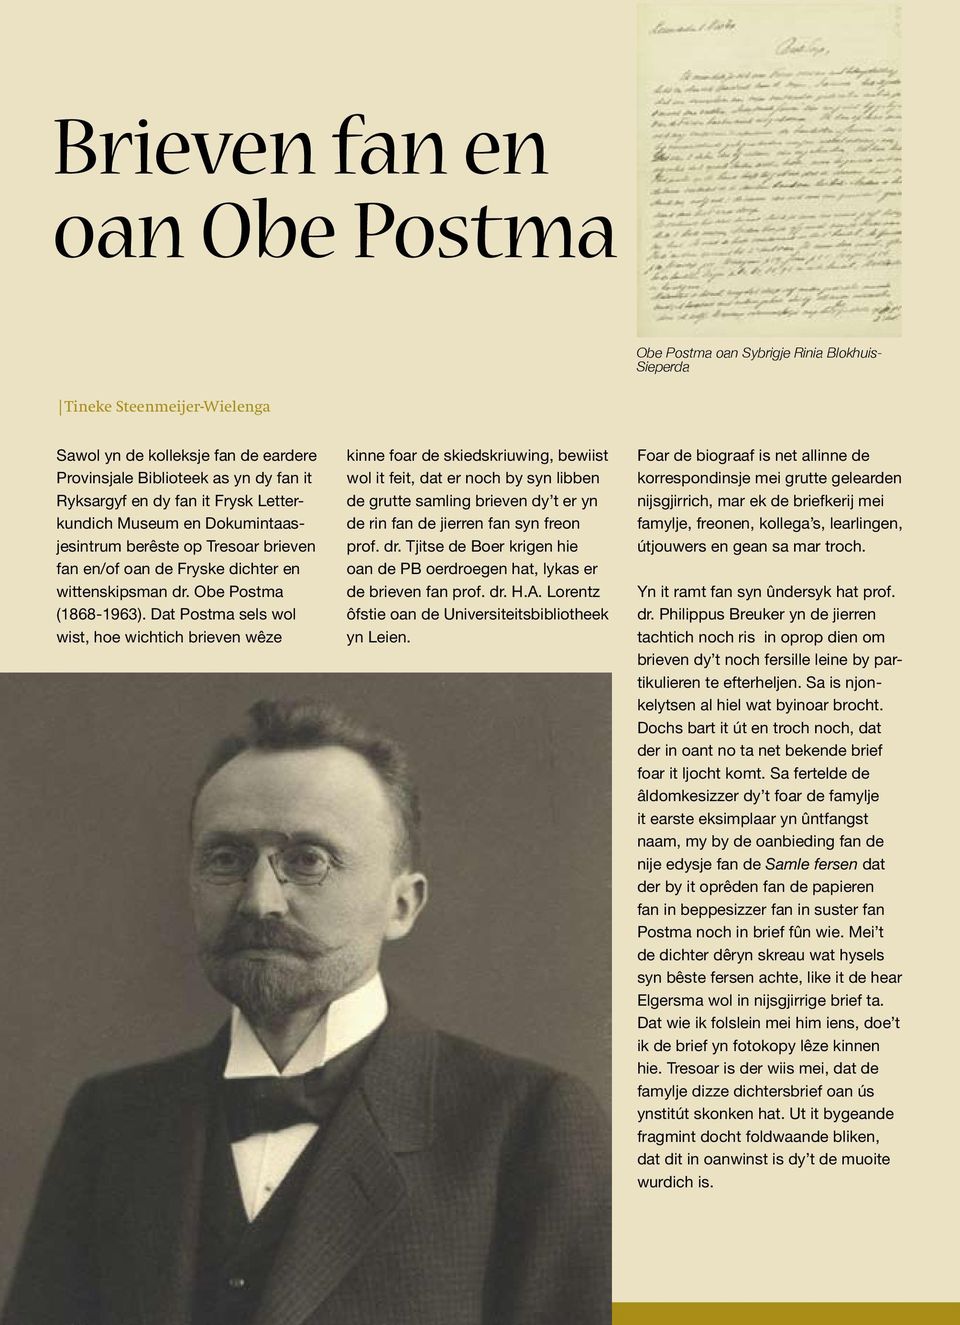 en dy fan it Frysk Letterkundich Museum en Dokumintaasjesintrum berêste op Tresoar brieven fan en/of oan de Fryske dichter en wittenskipsman dr. Obe Postma (1868-1963).